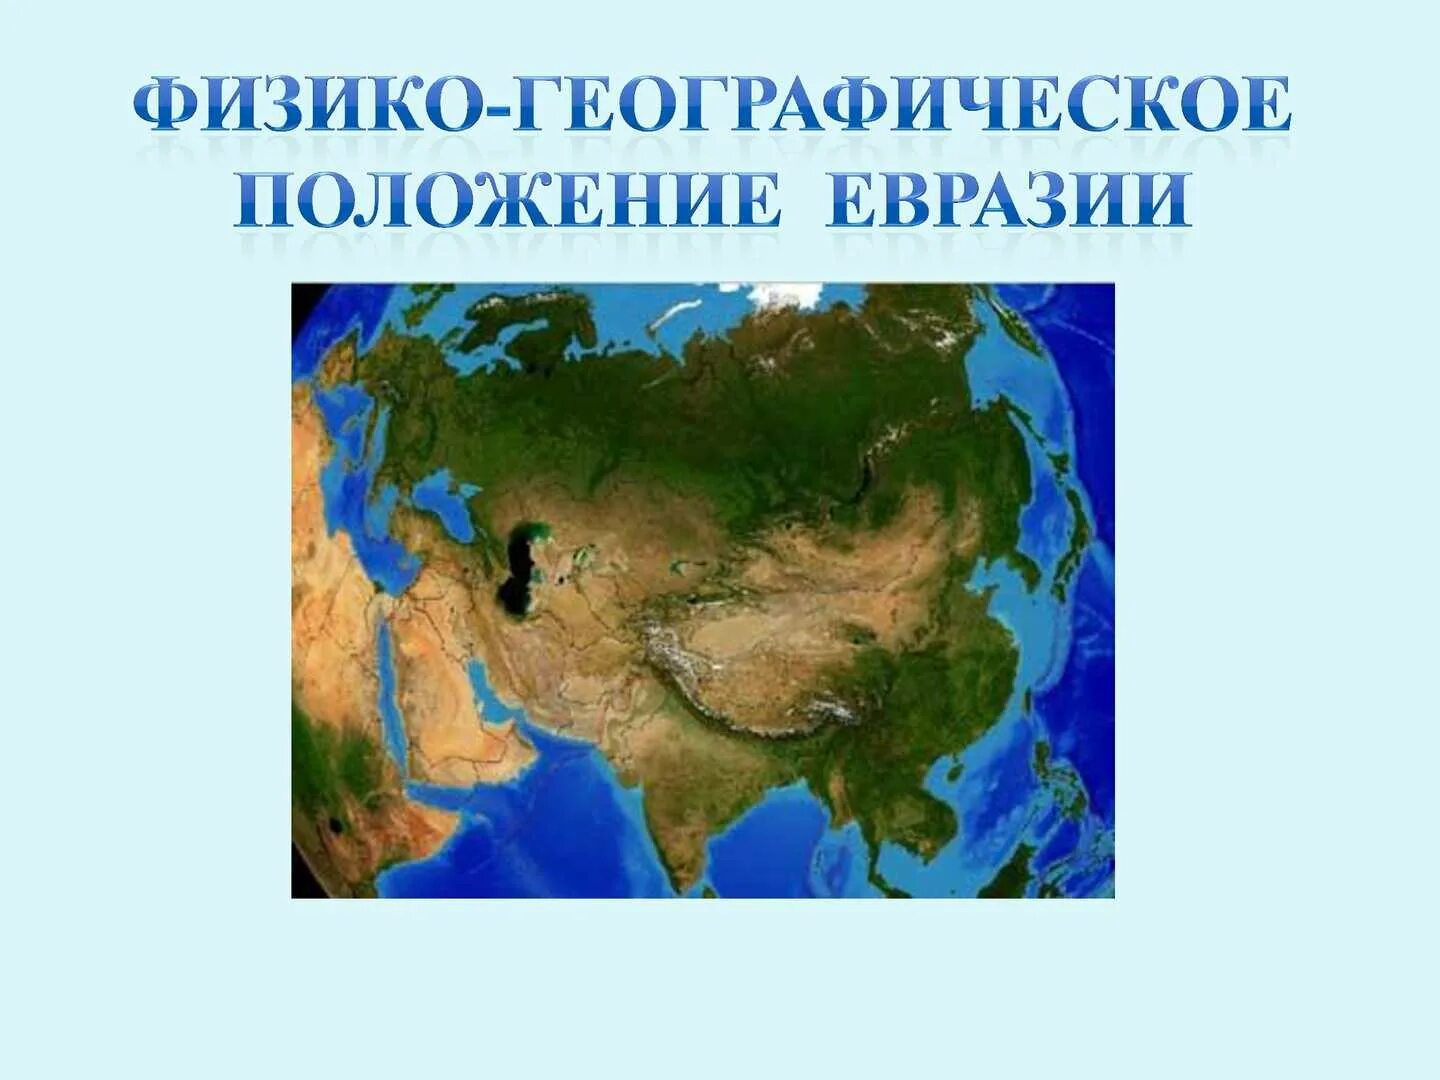 Евразия. Материк Евразия. Евро Азия. Физико географическое положение Евразии. Четыре океана омывают